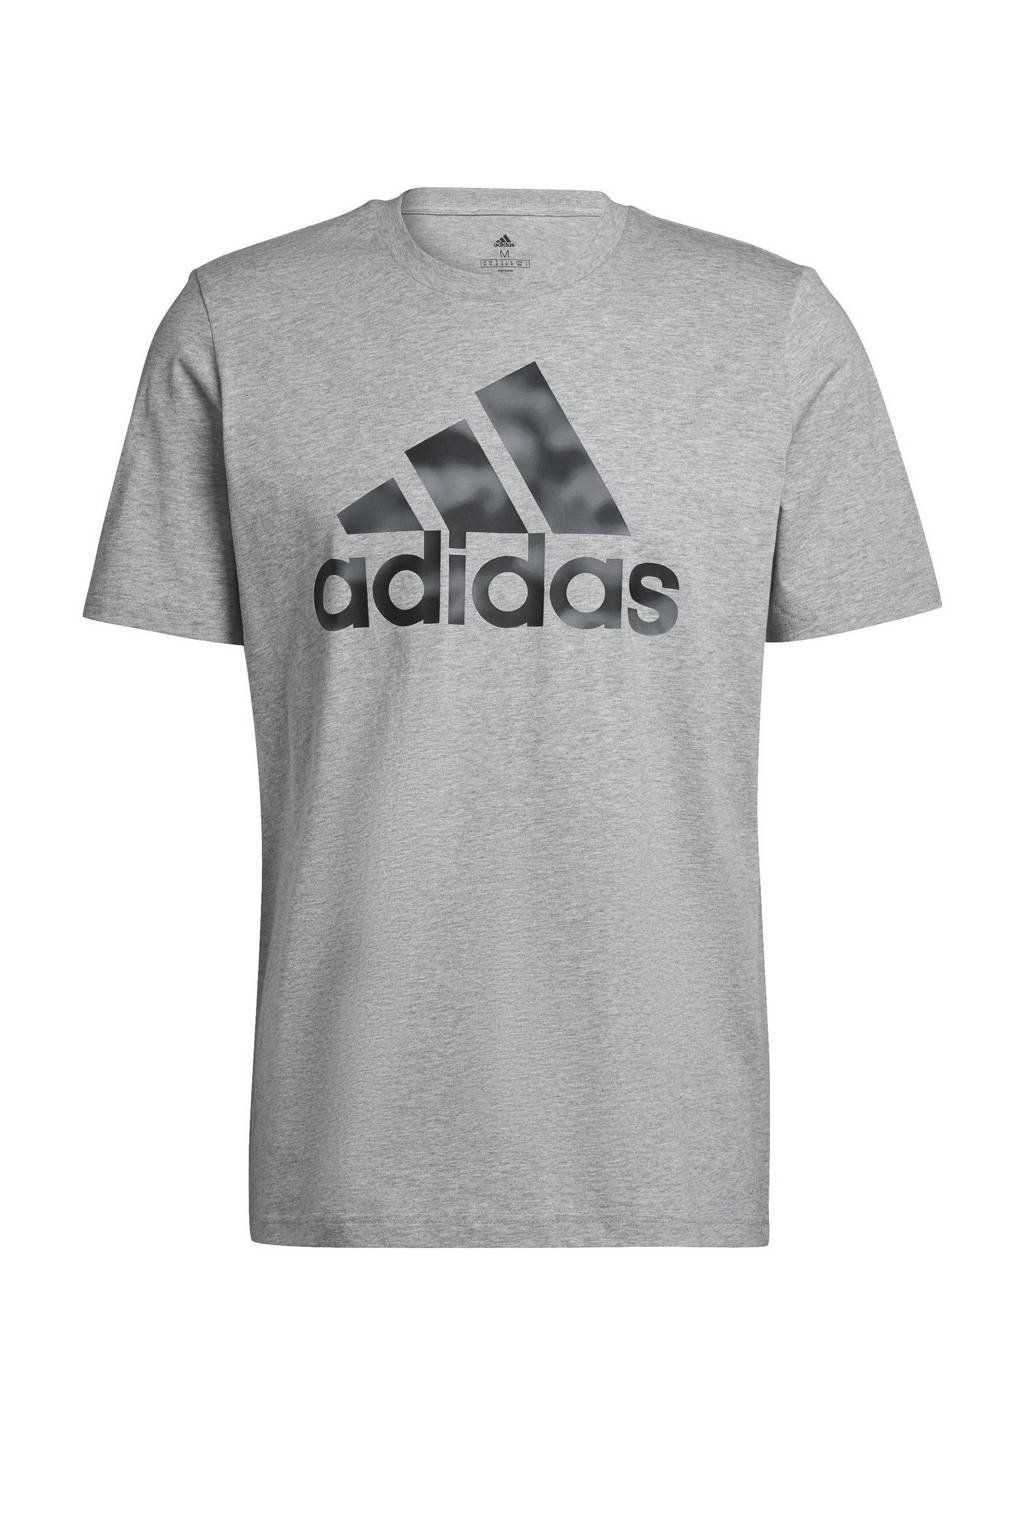 adidas Performance   sport T-shirt grijs/antraciet